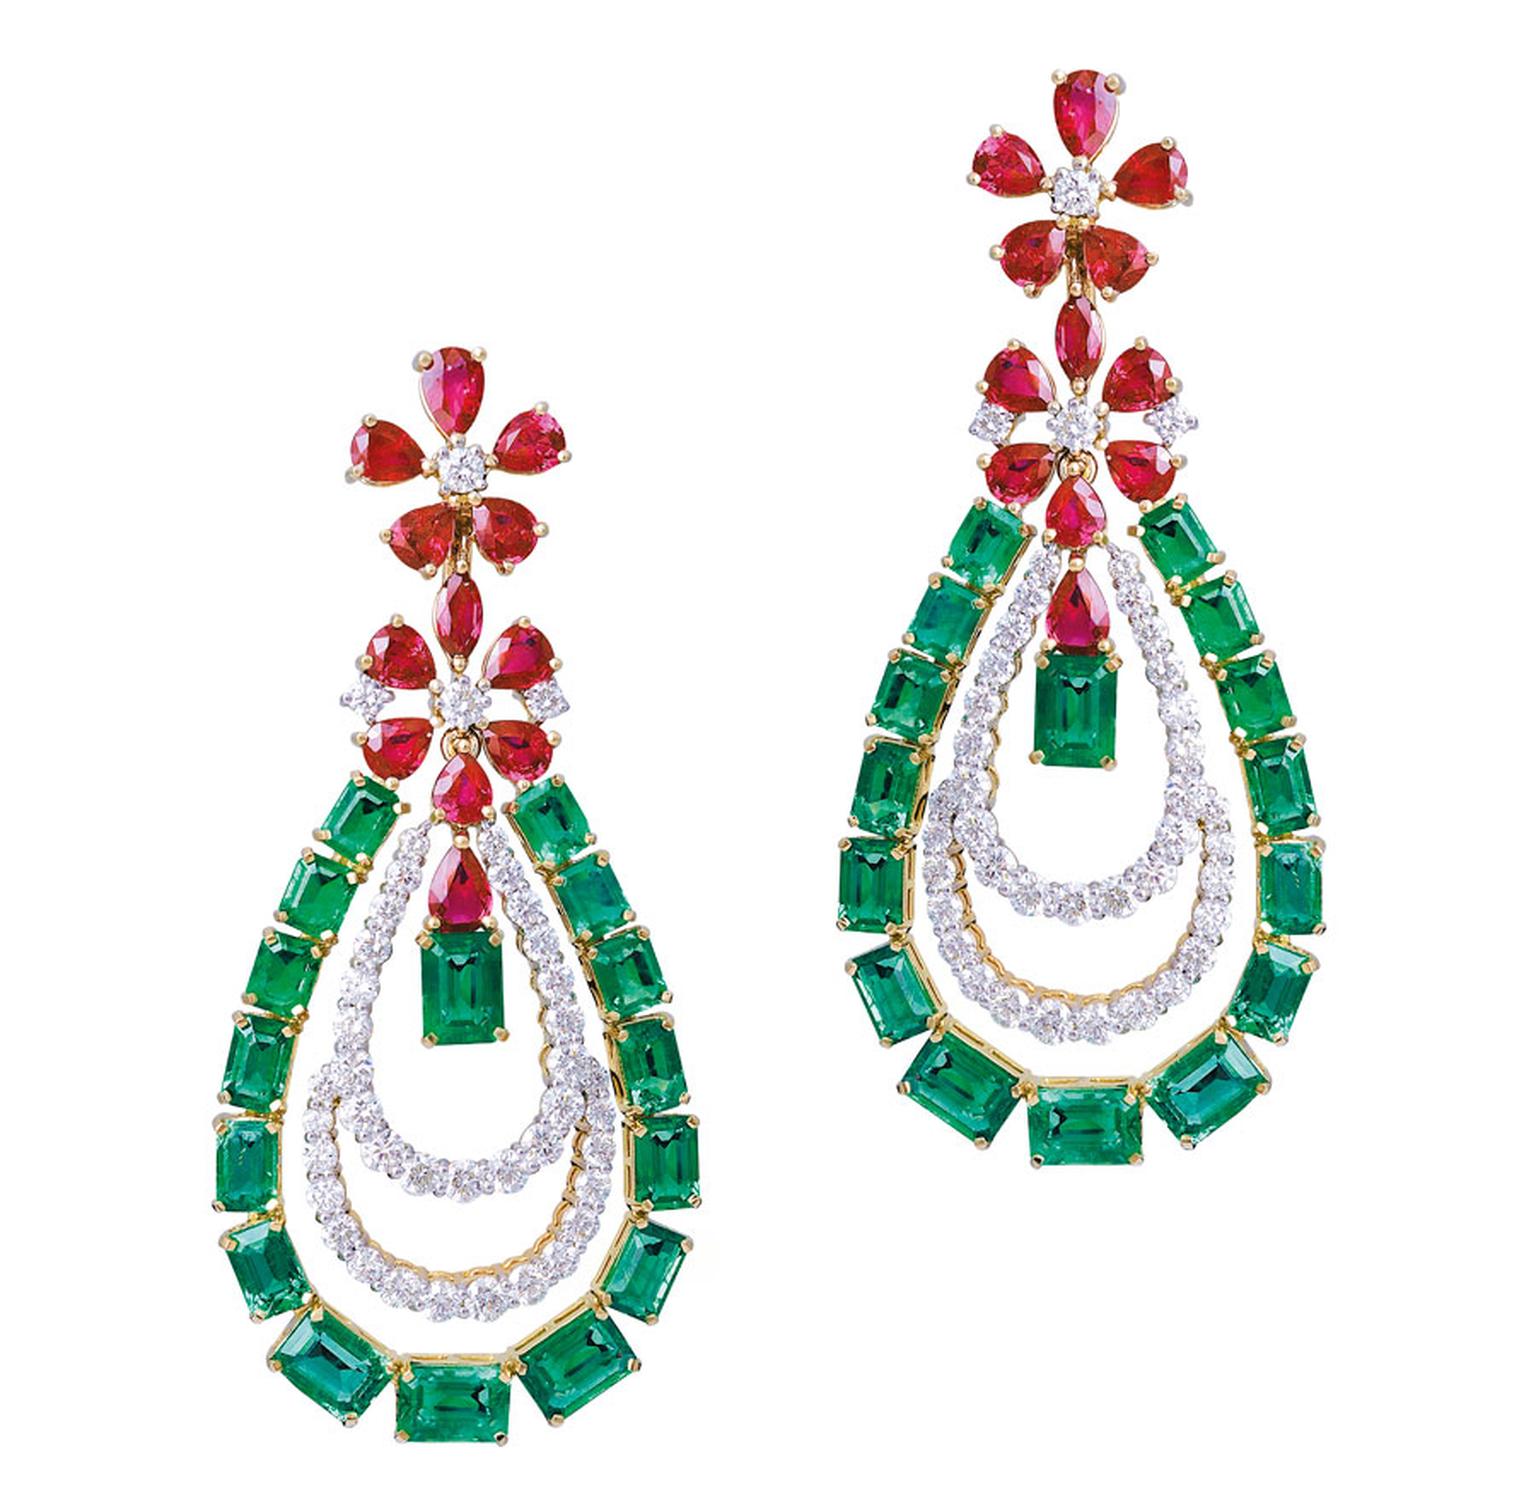 Gemfields-Farah-Khan-earrings-with-Gemfields-rubies-and-emeralds-CMYK.jpg